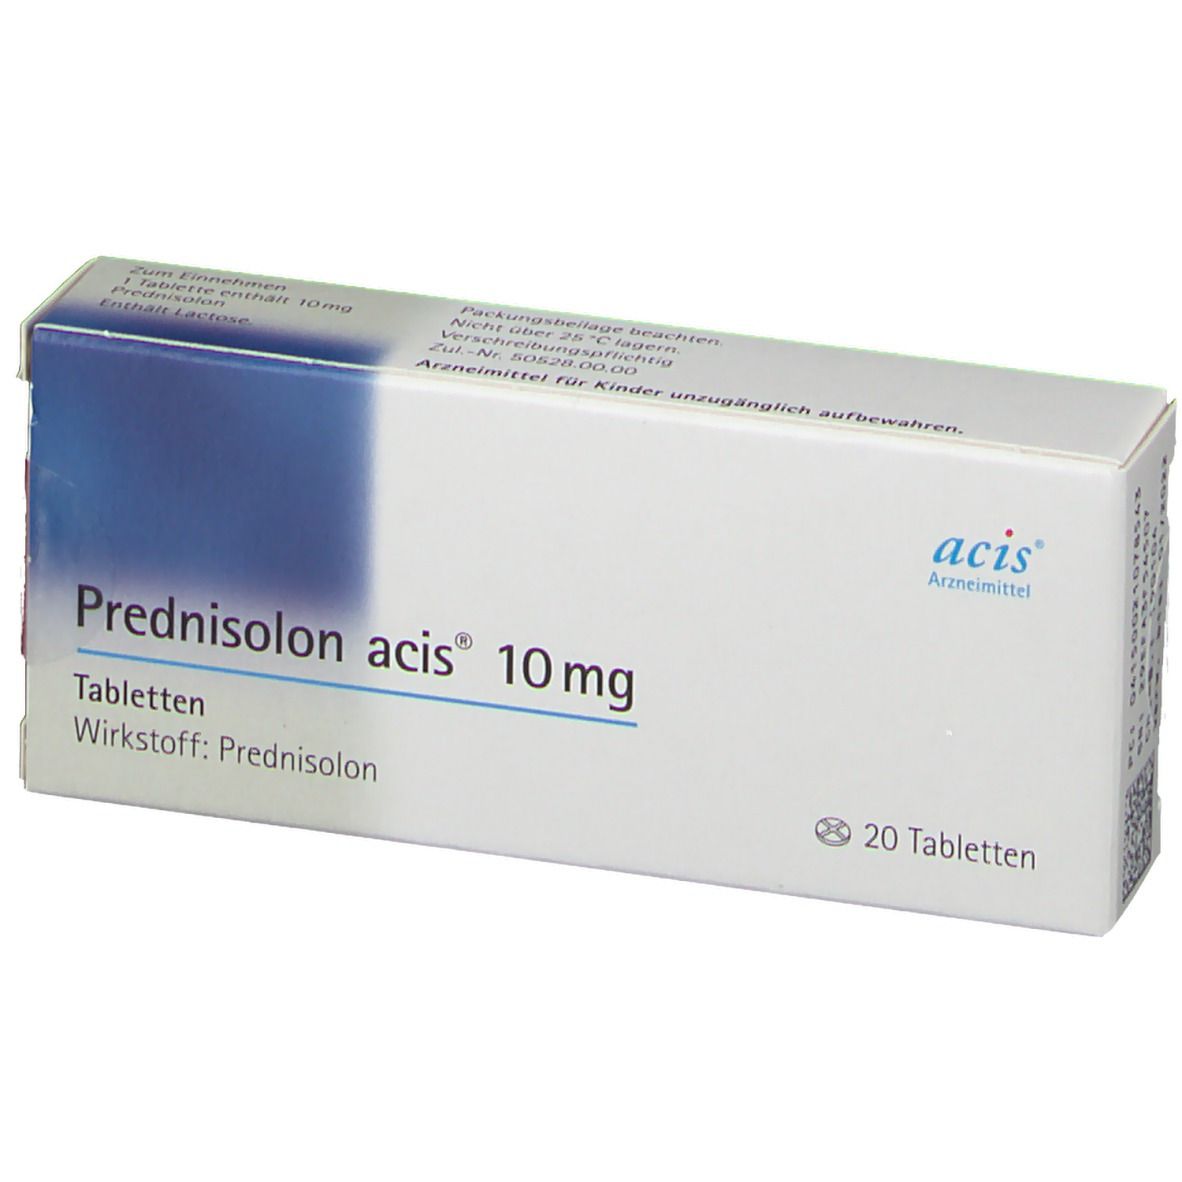 Prednisolon acis® 10Mg